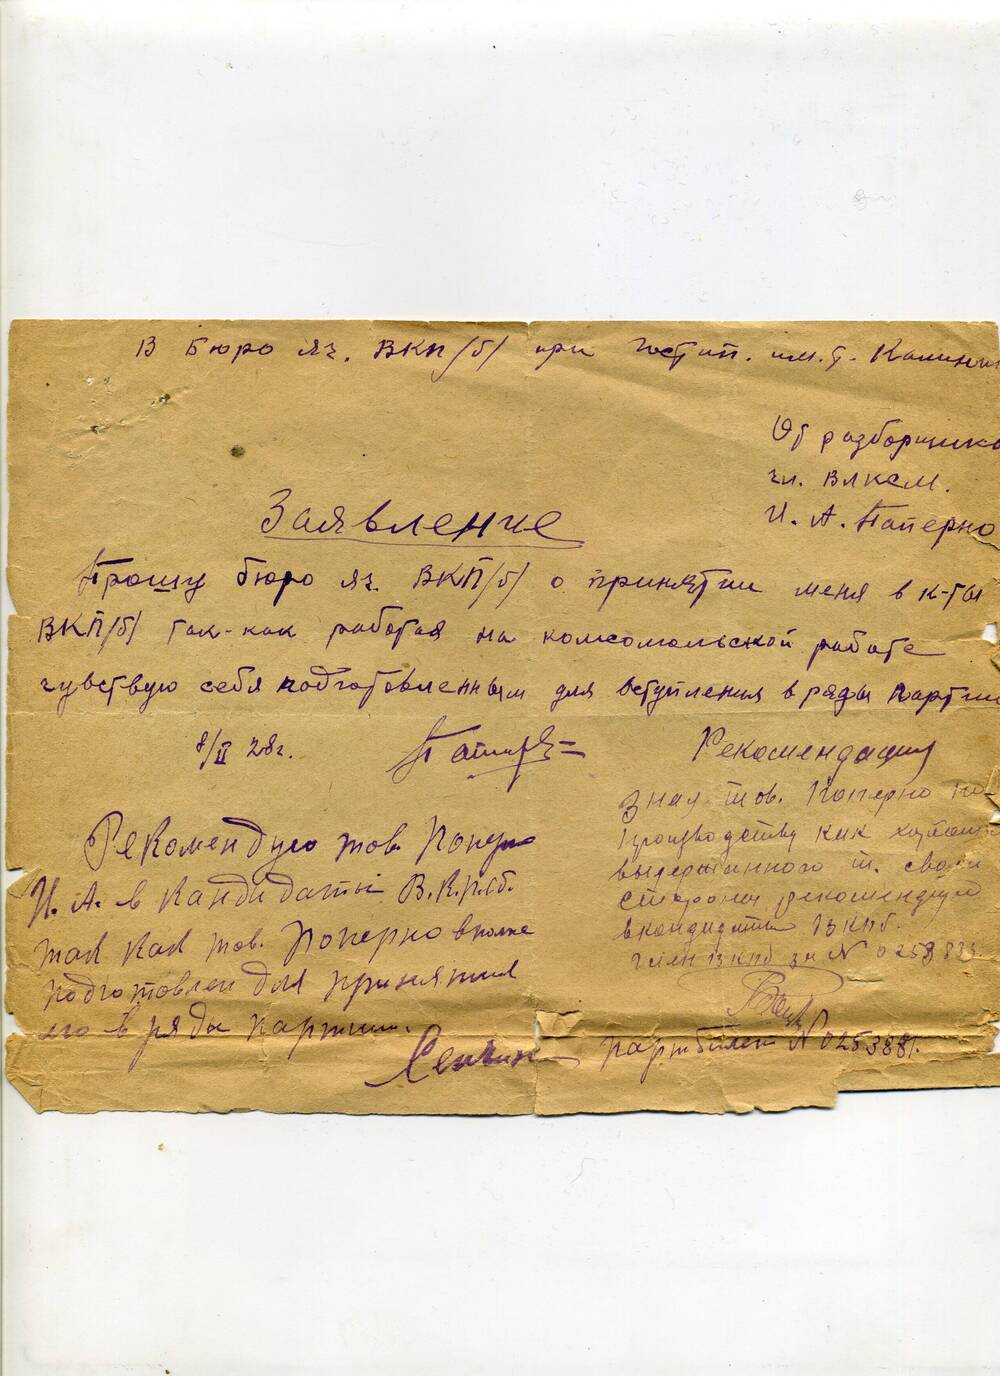 Заявление о приеме И.А. паперно в кандидаты ВКП (б), 08.02.1928 г. Подл.